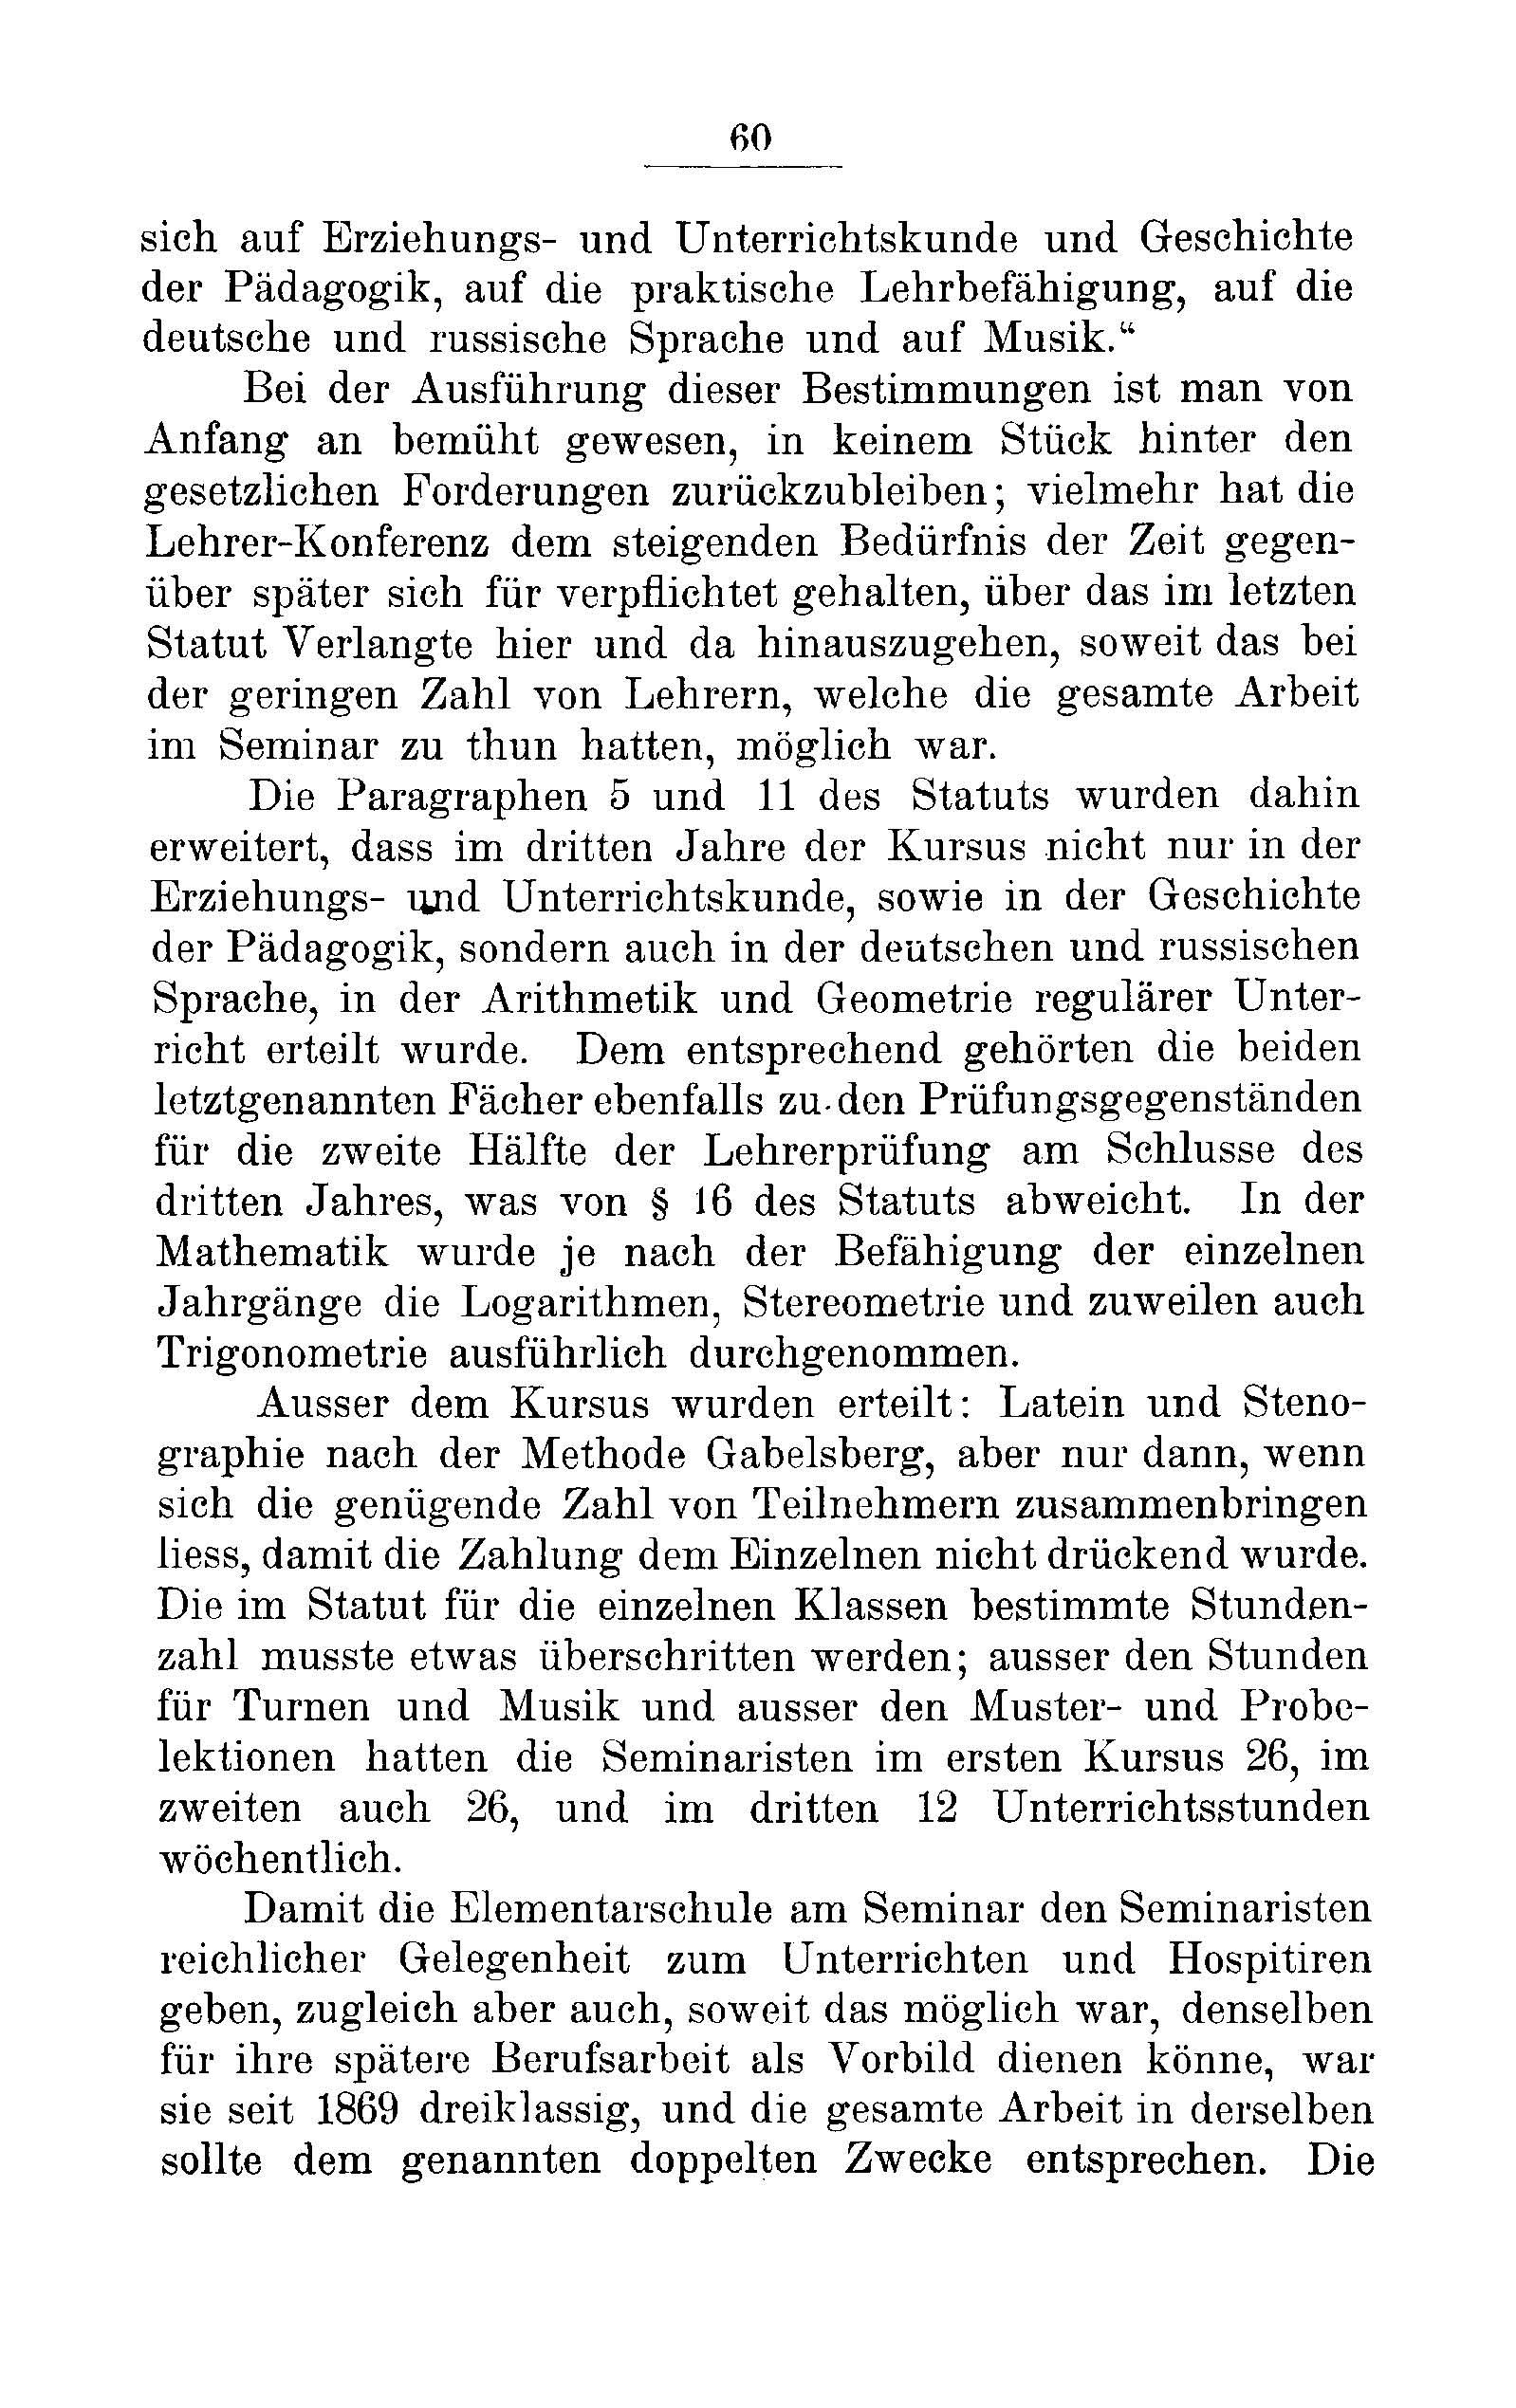 Das Erste Dorpatsche Lehrer-Seminar (1890) | 63. Main body of text